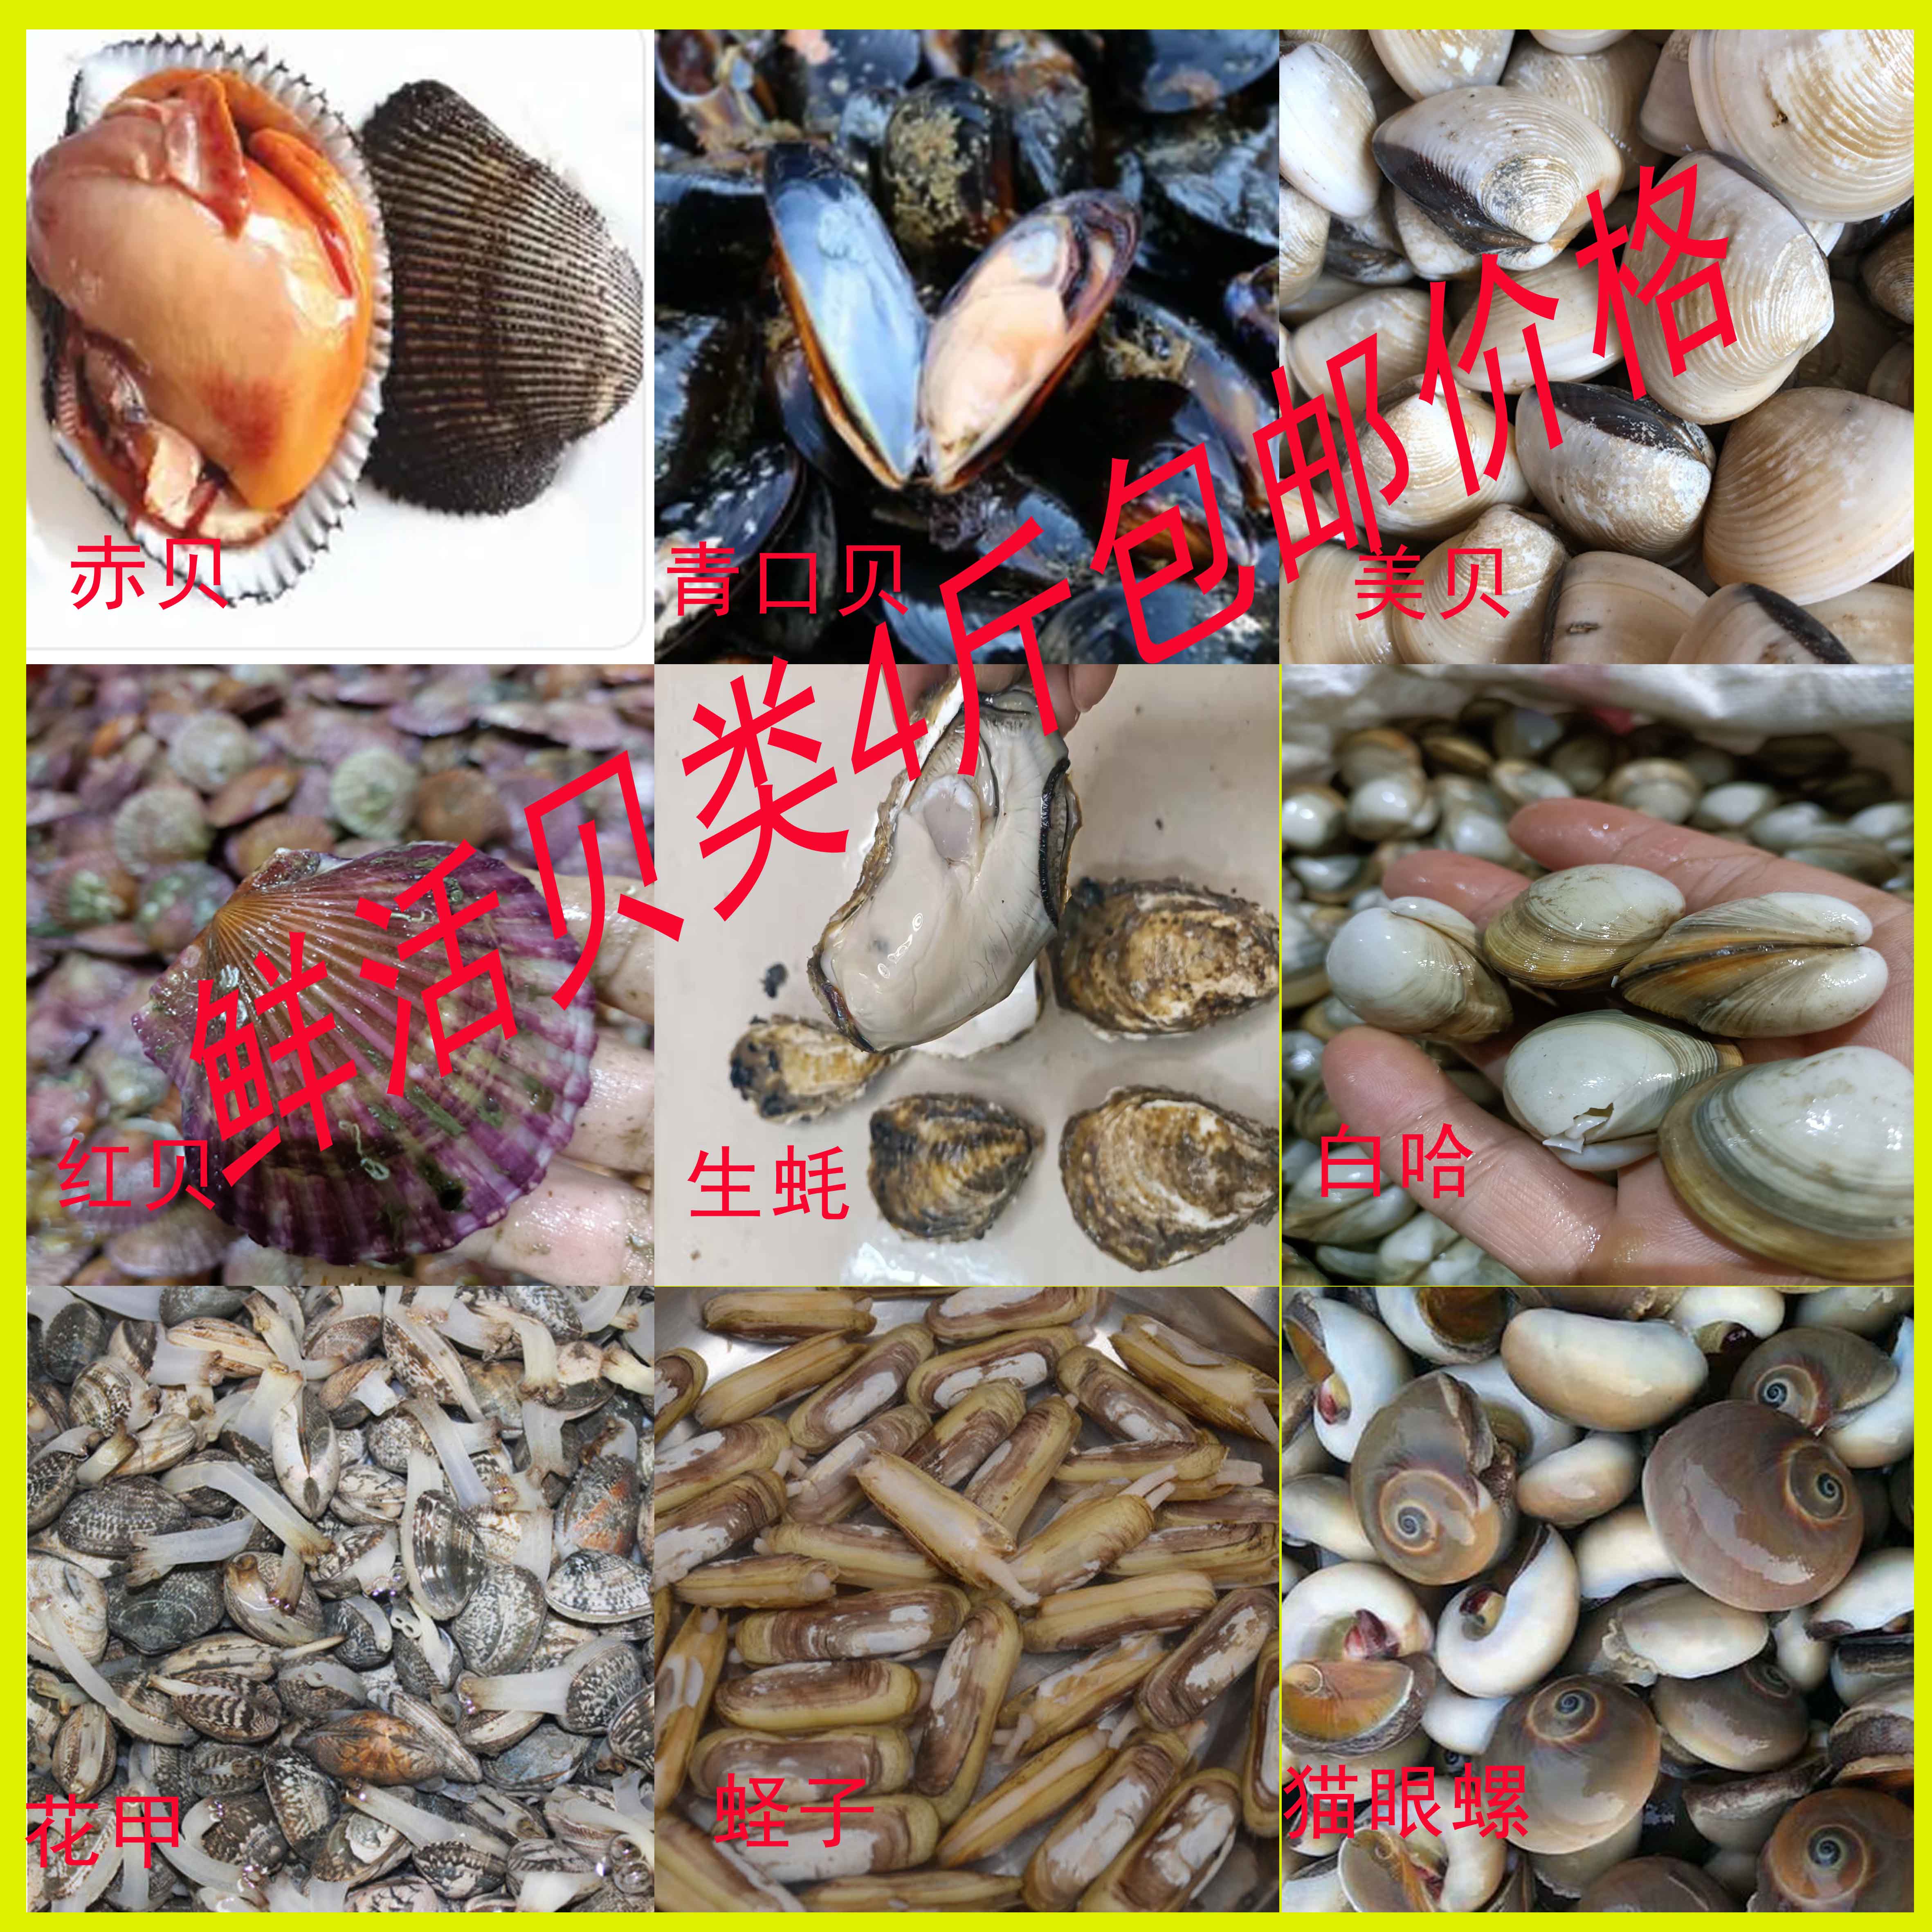 鲜活海鲜鲍鱼青口贝蛏子海鲜大咖海鲜套餐组合 水产肉类/新鲜蔬果/熟食 青口贝 原图主图